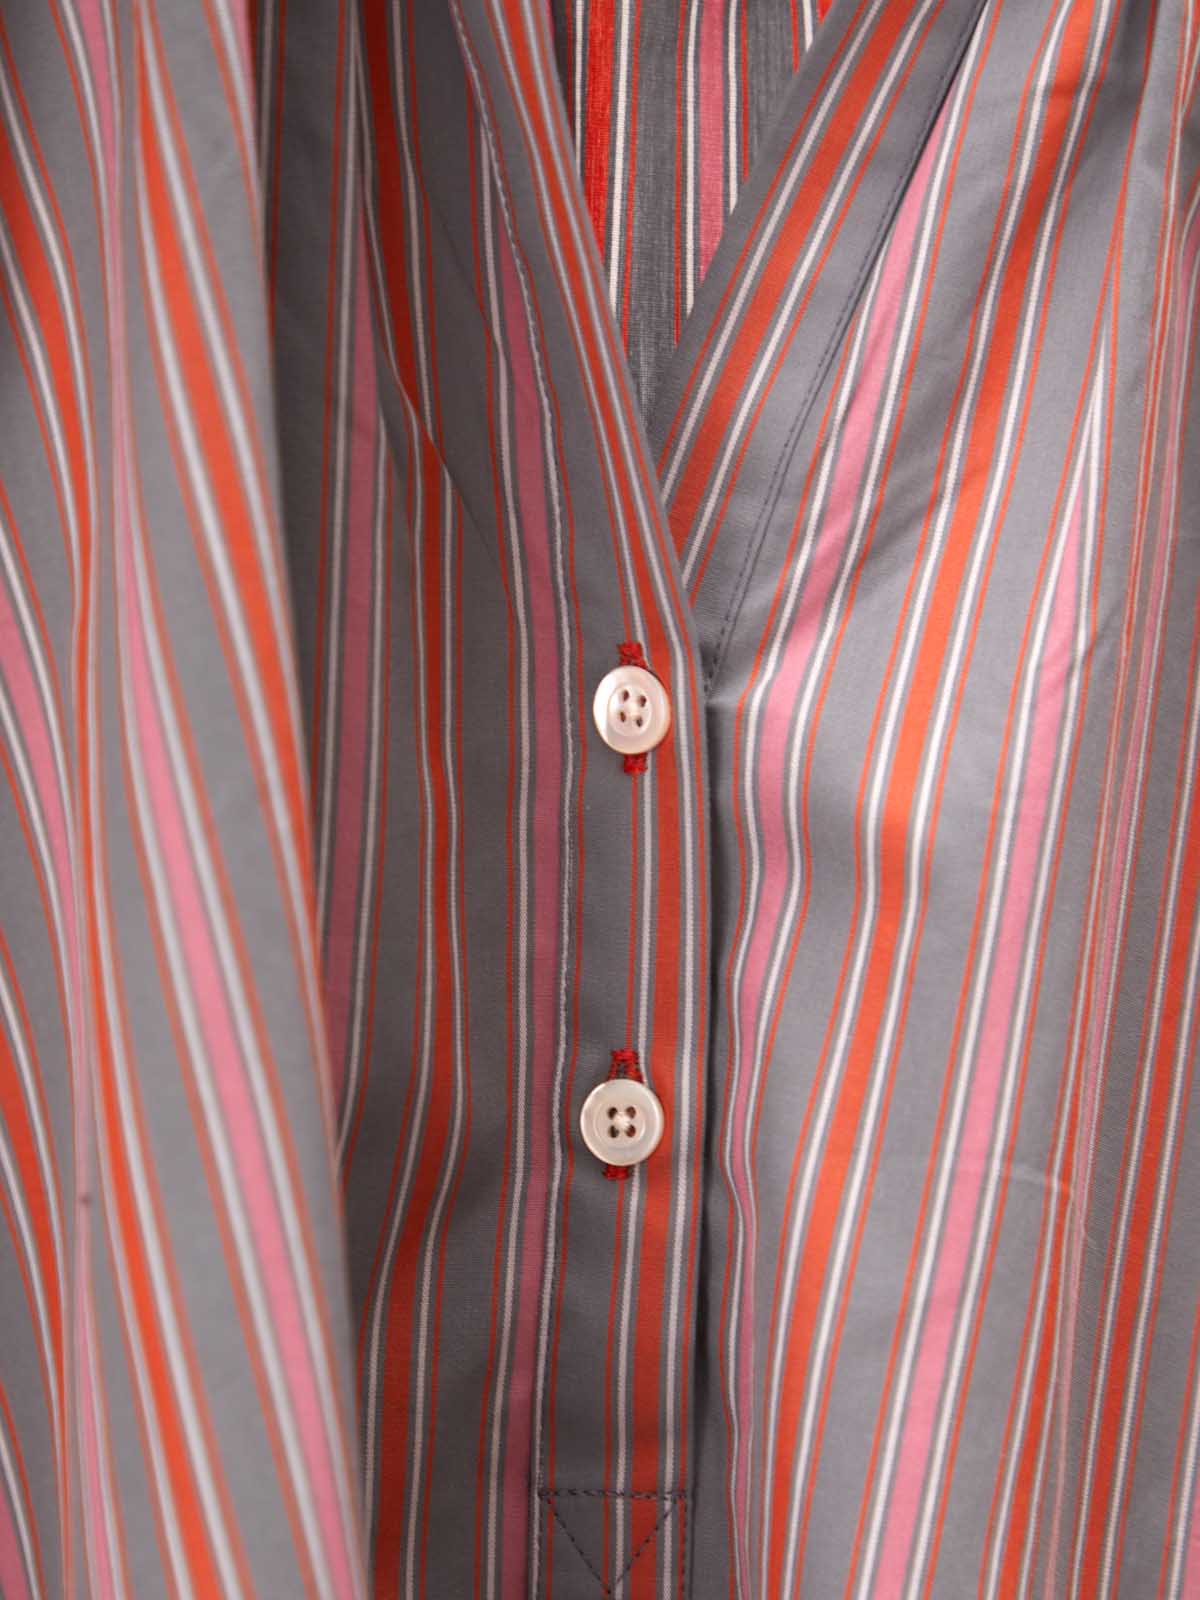 Moismont striped shirt buttons